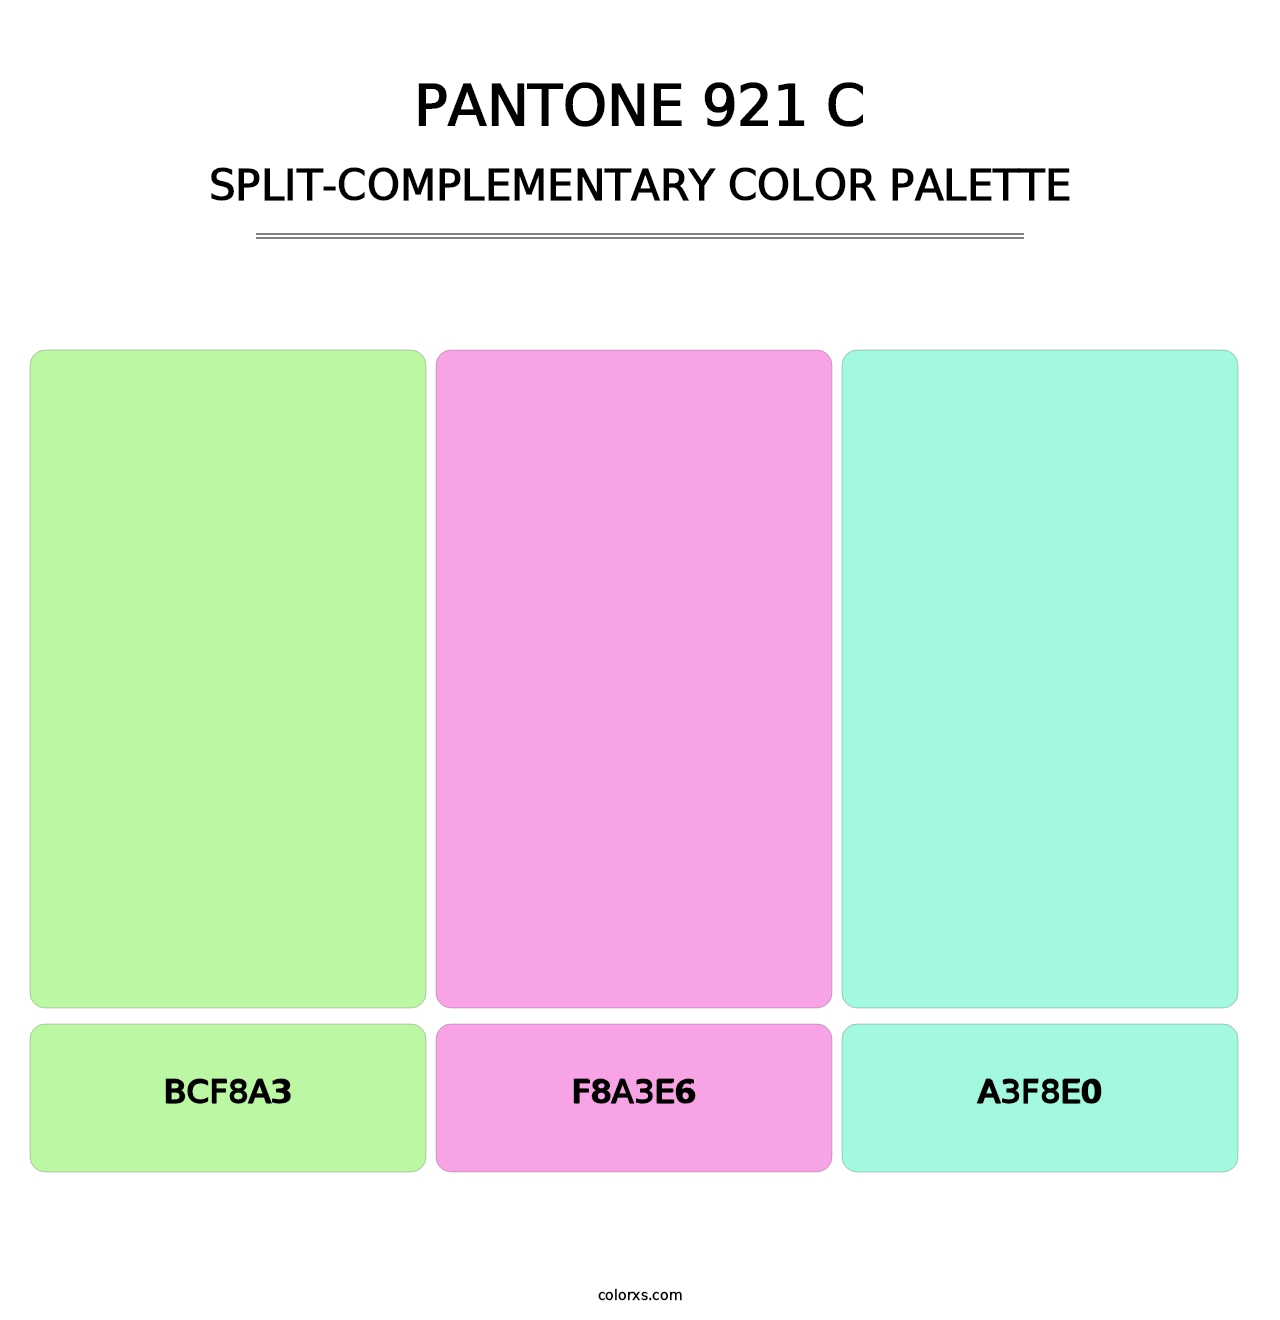 PANTONE 921 C - Split-Complementary Color Palette